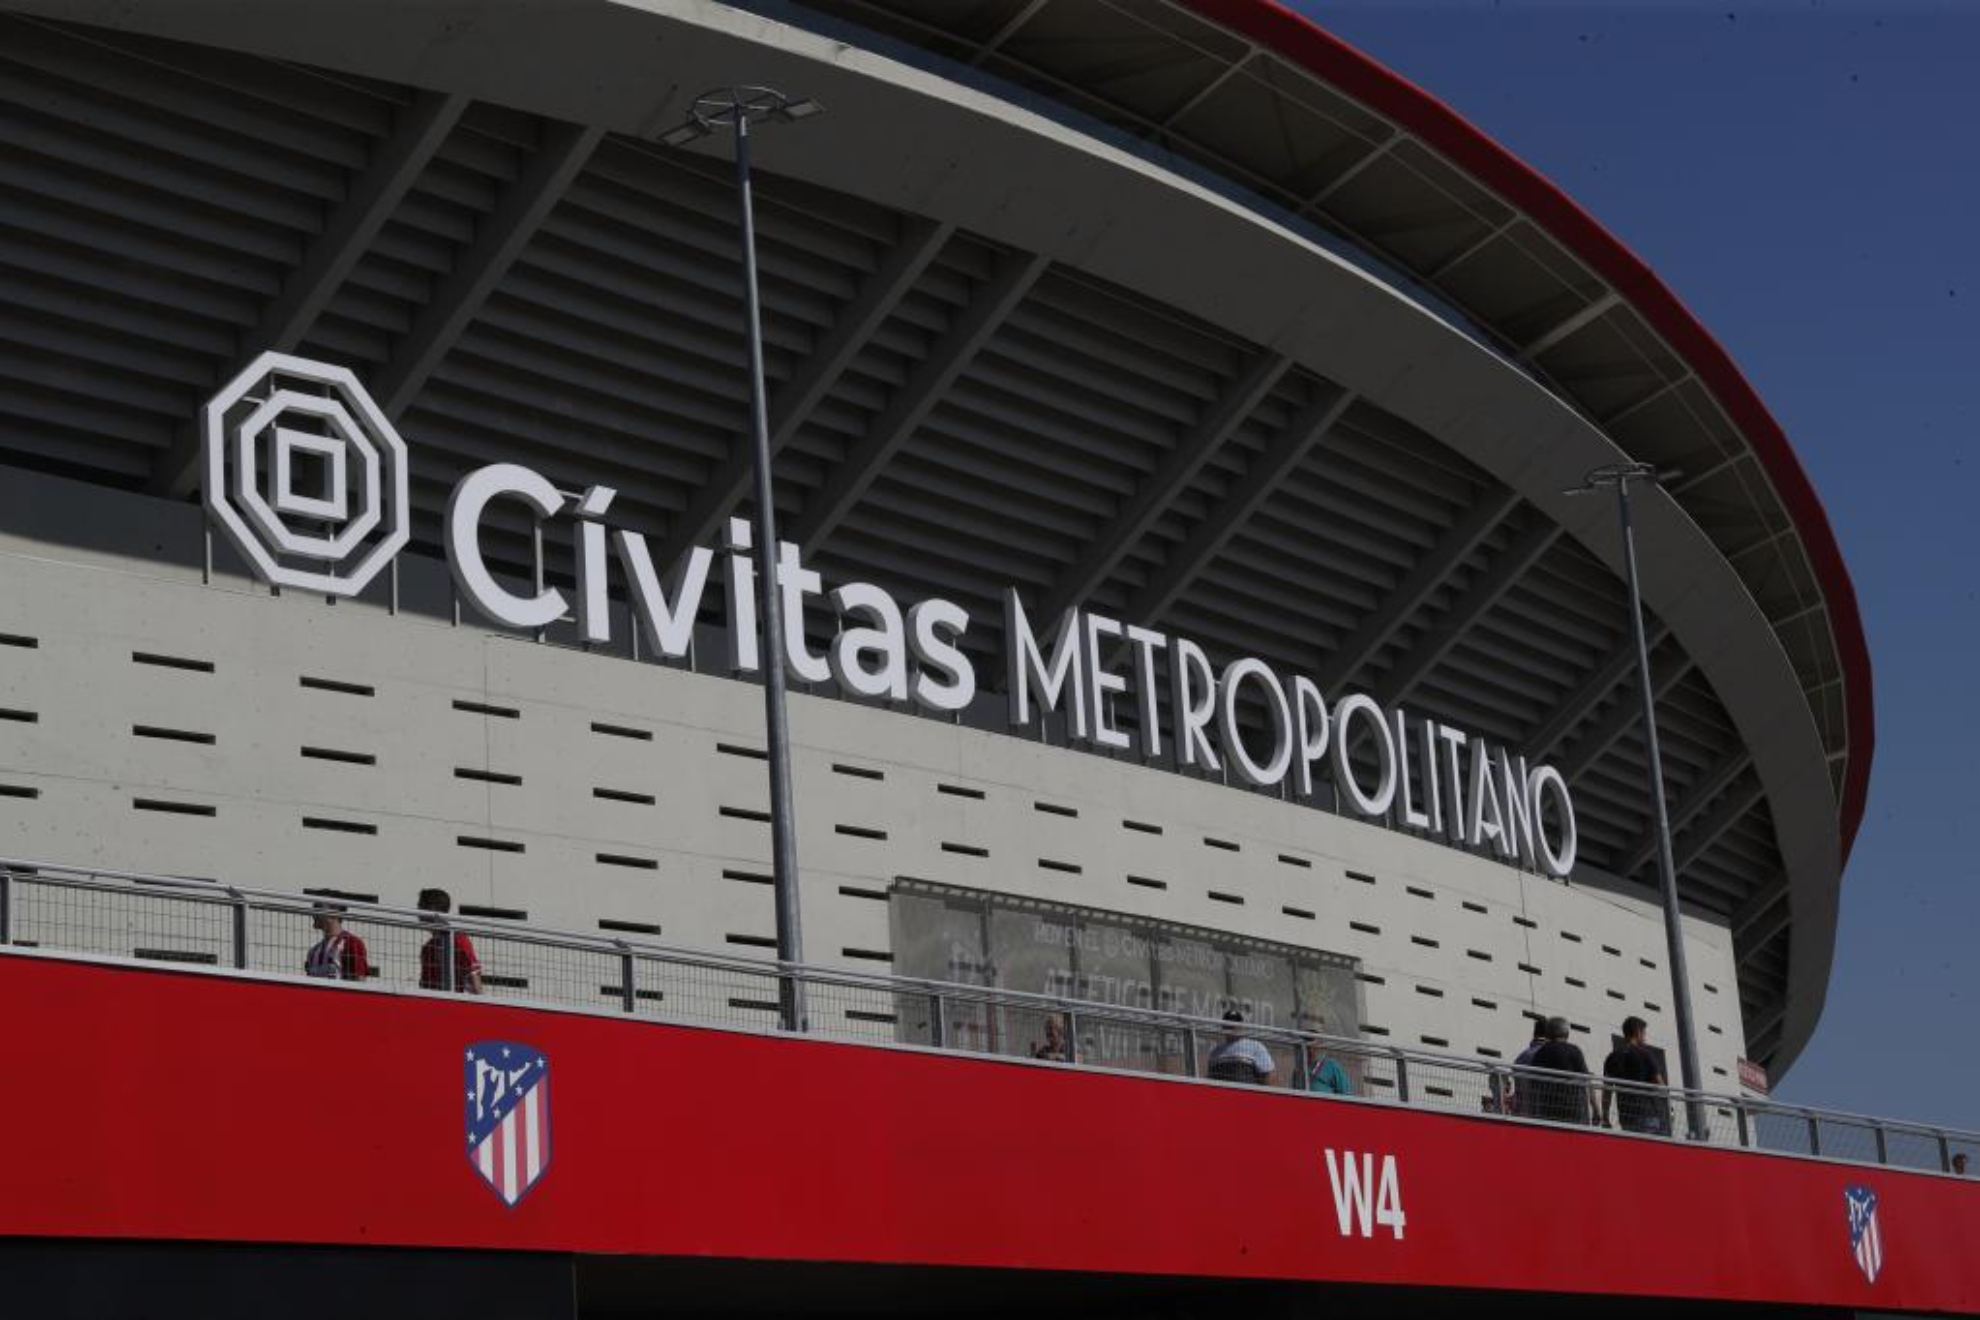 El Cívitas Metropolitano acogerá las finales de la Kings League InfoJobs y Queens League Oysho